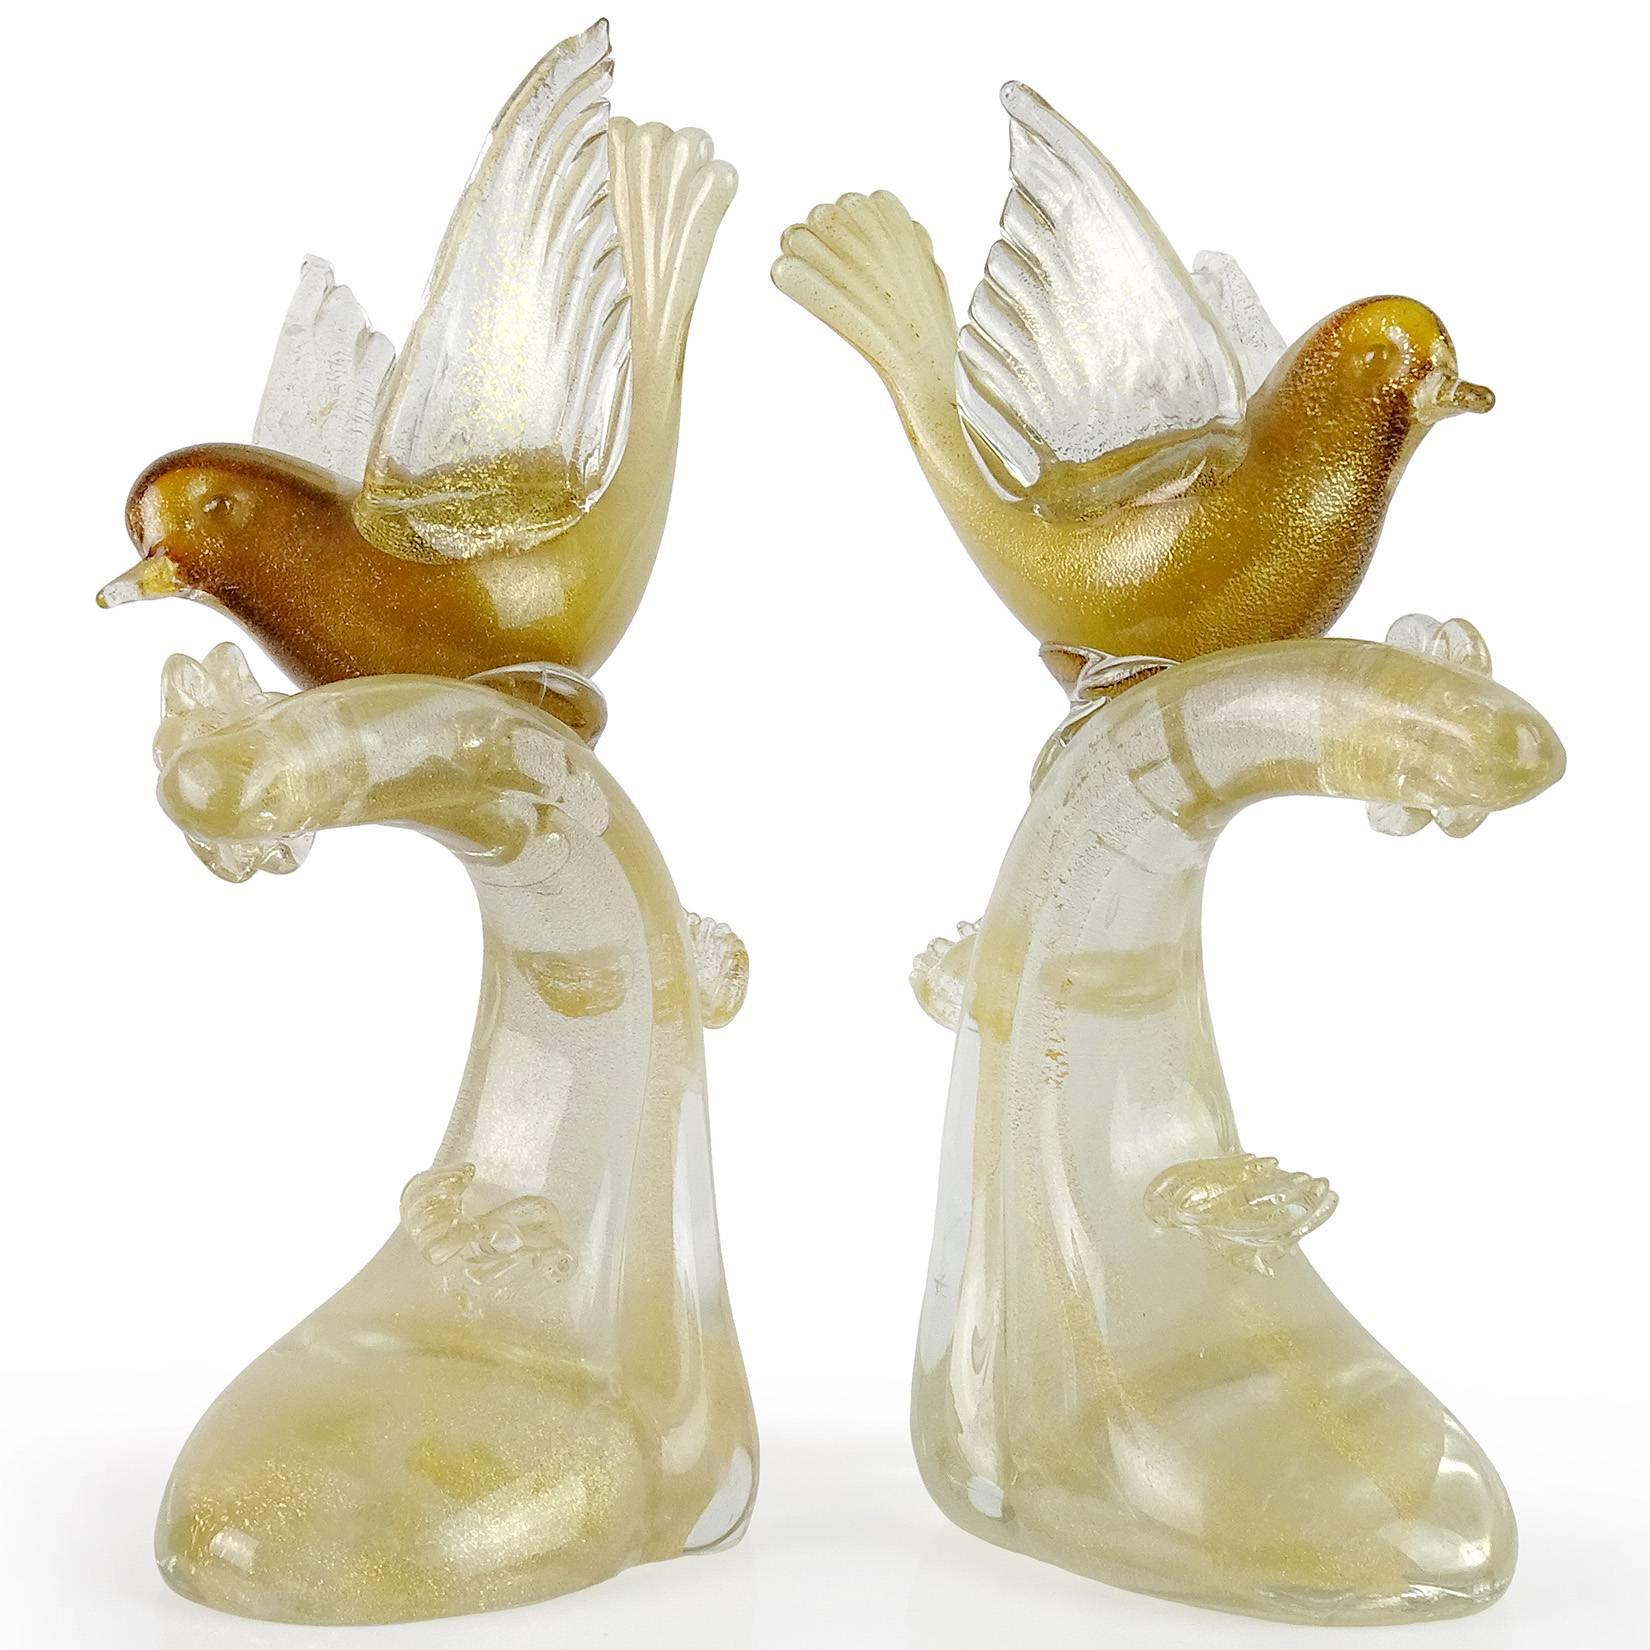 Magnifique paire de sculptures d'oiseaux sur branches en verre soufflé à la bouche de Murano, blanc, ambre foncé et mouchetures d'or. Labellisé à la société Salviati, avec l'étiquette d'origine usée en dessous. Les pièces sont abondamment